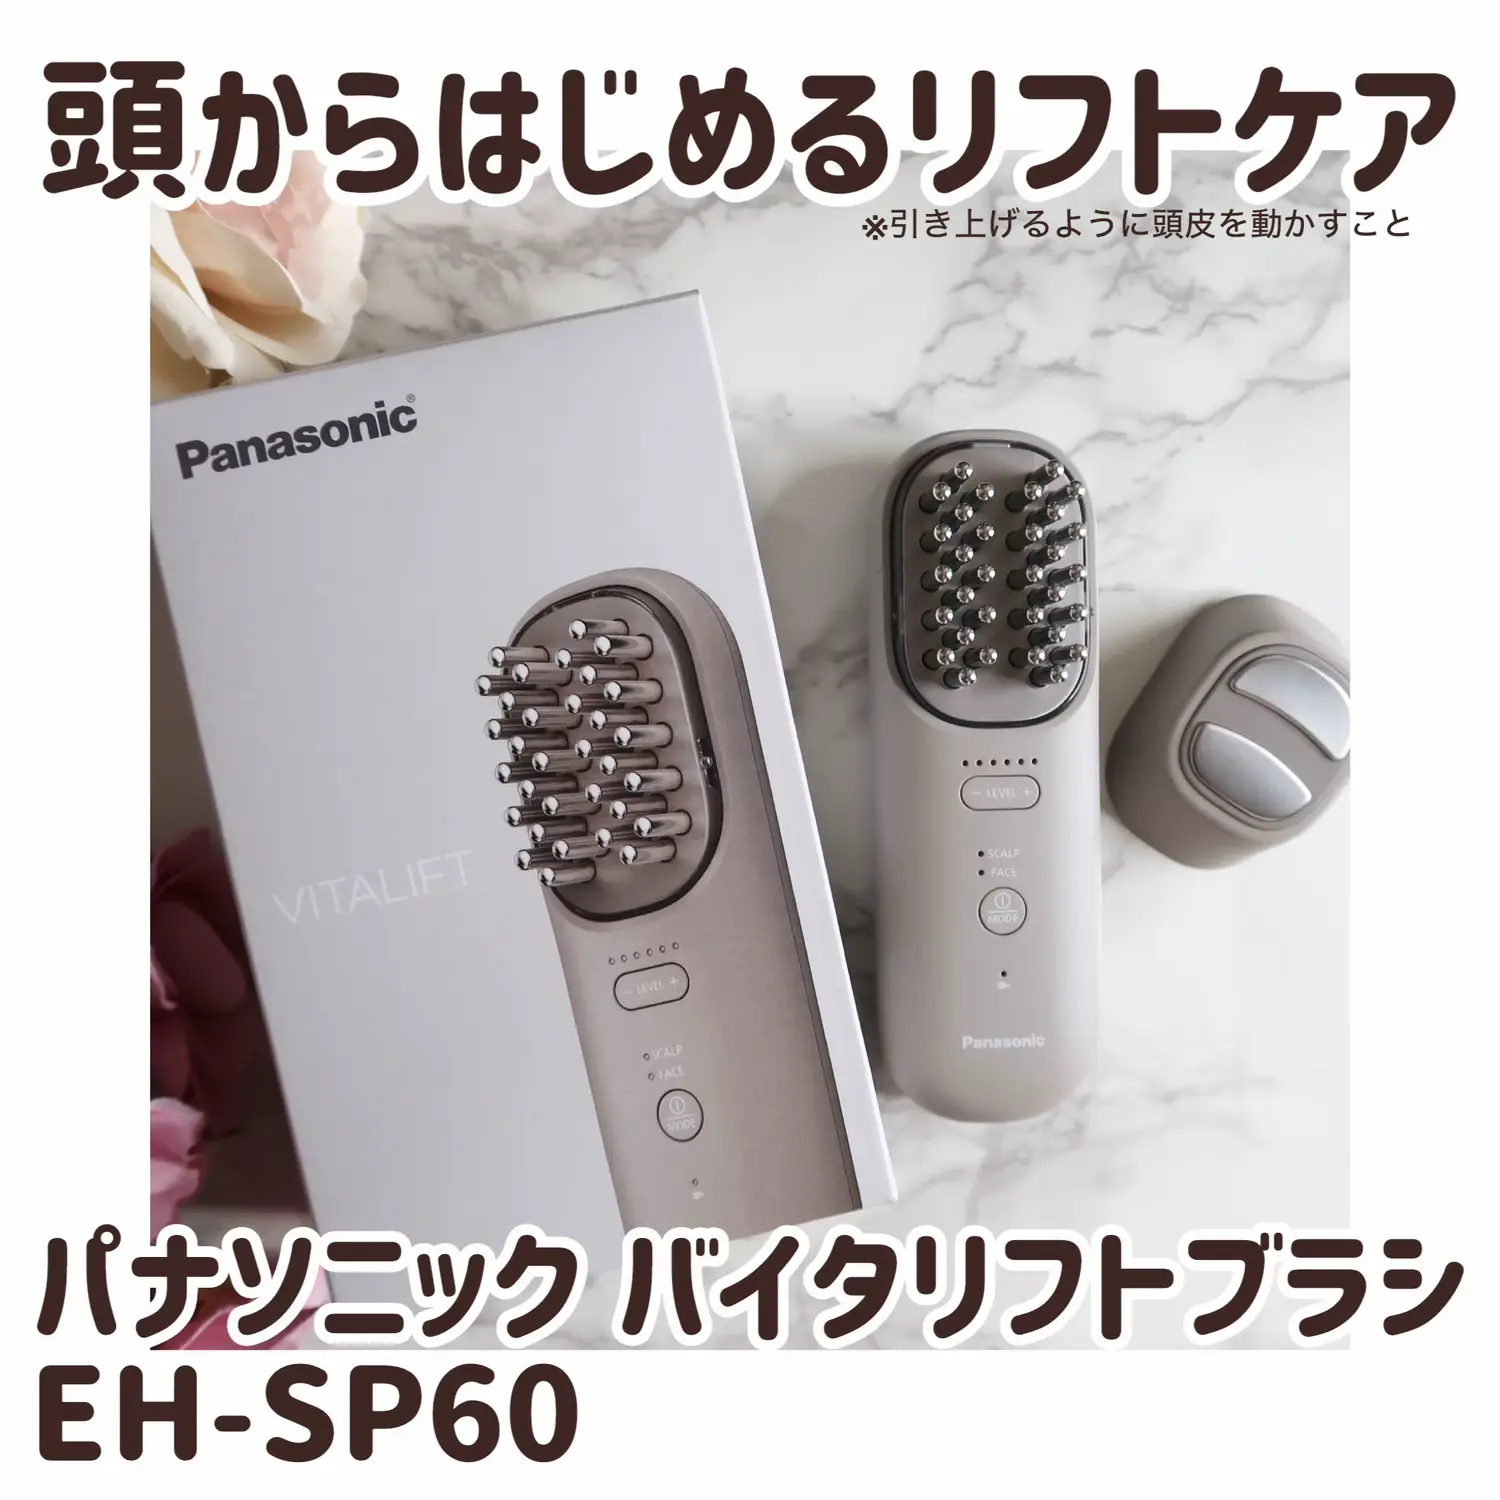 Panasonic バイタリフトブラシ EH-SP60-H (取扱説明書付き) - ボディ 